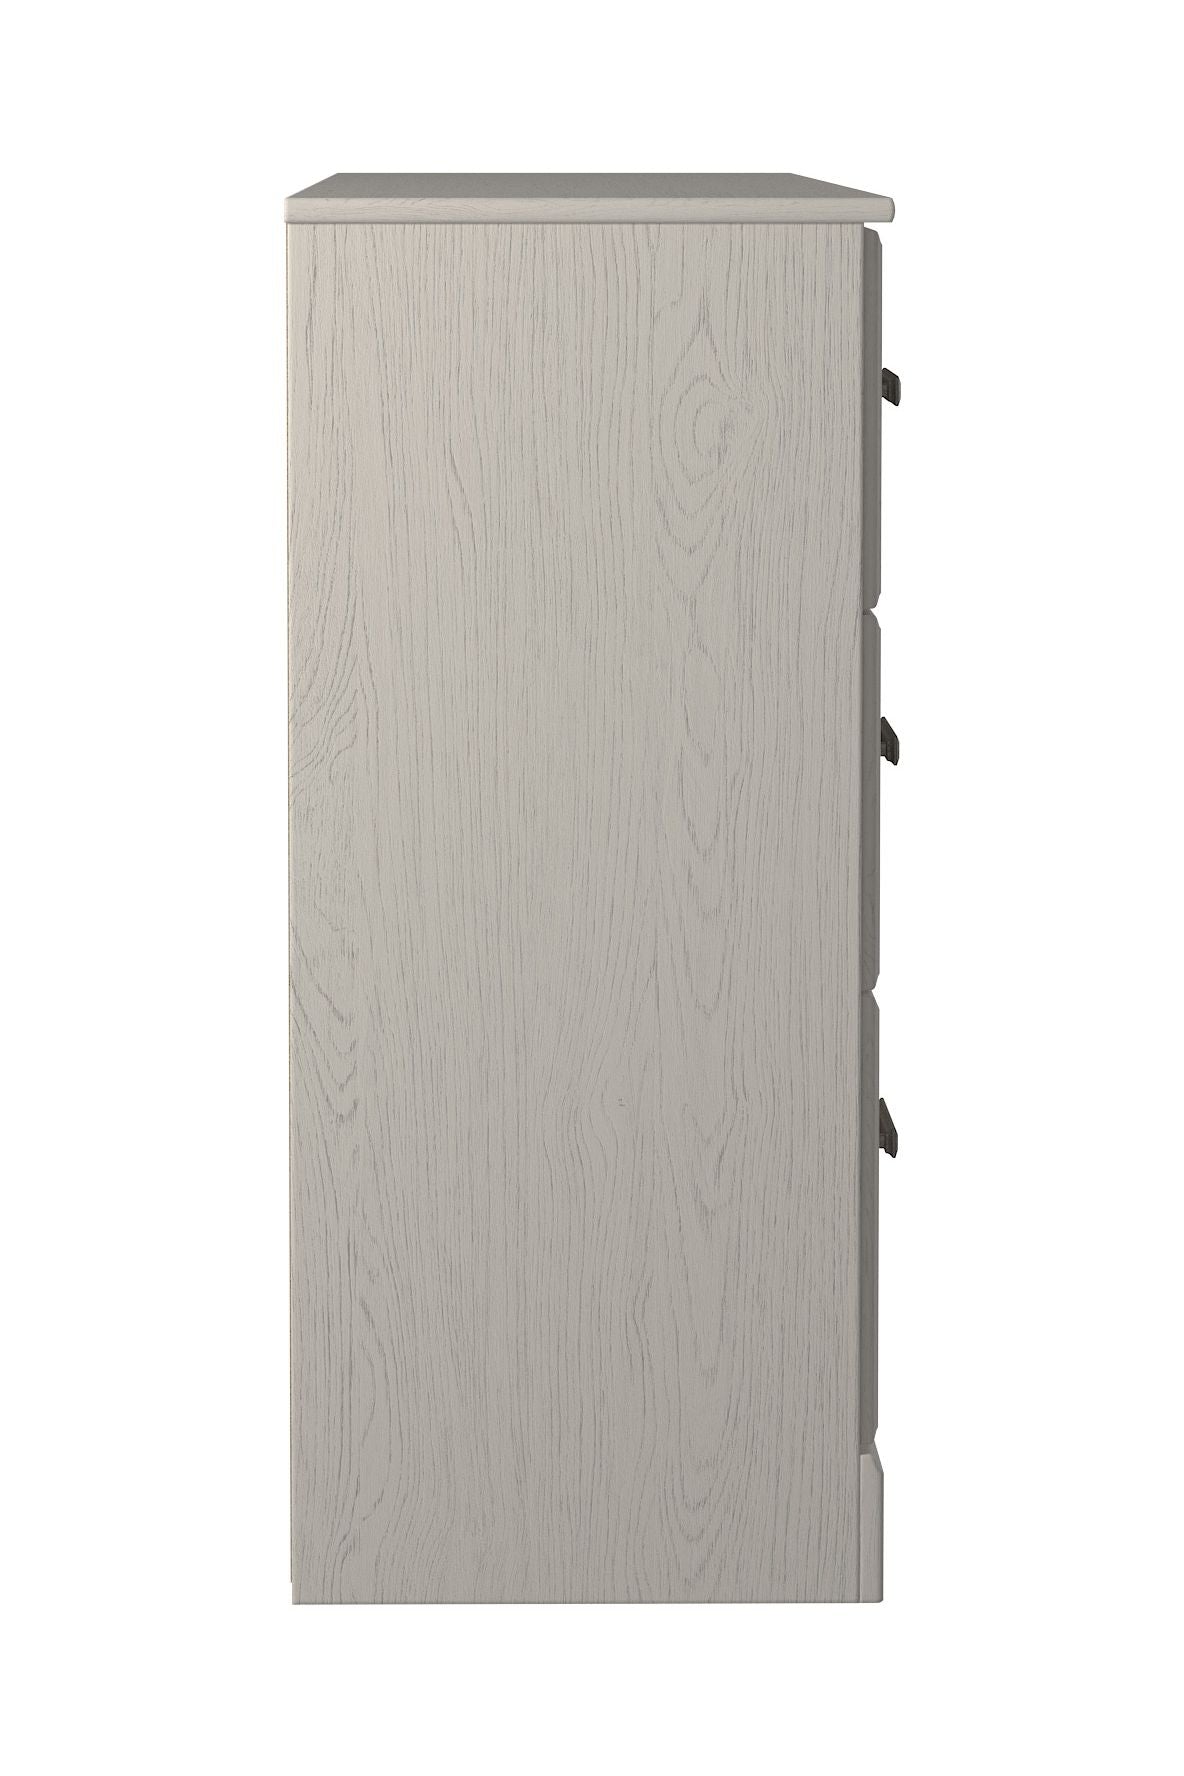 Stelsie - White - Six Drawer Dresser